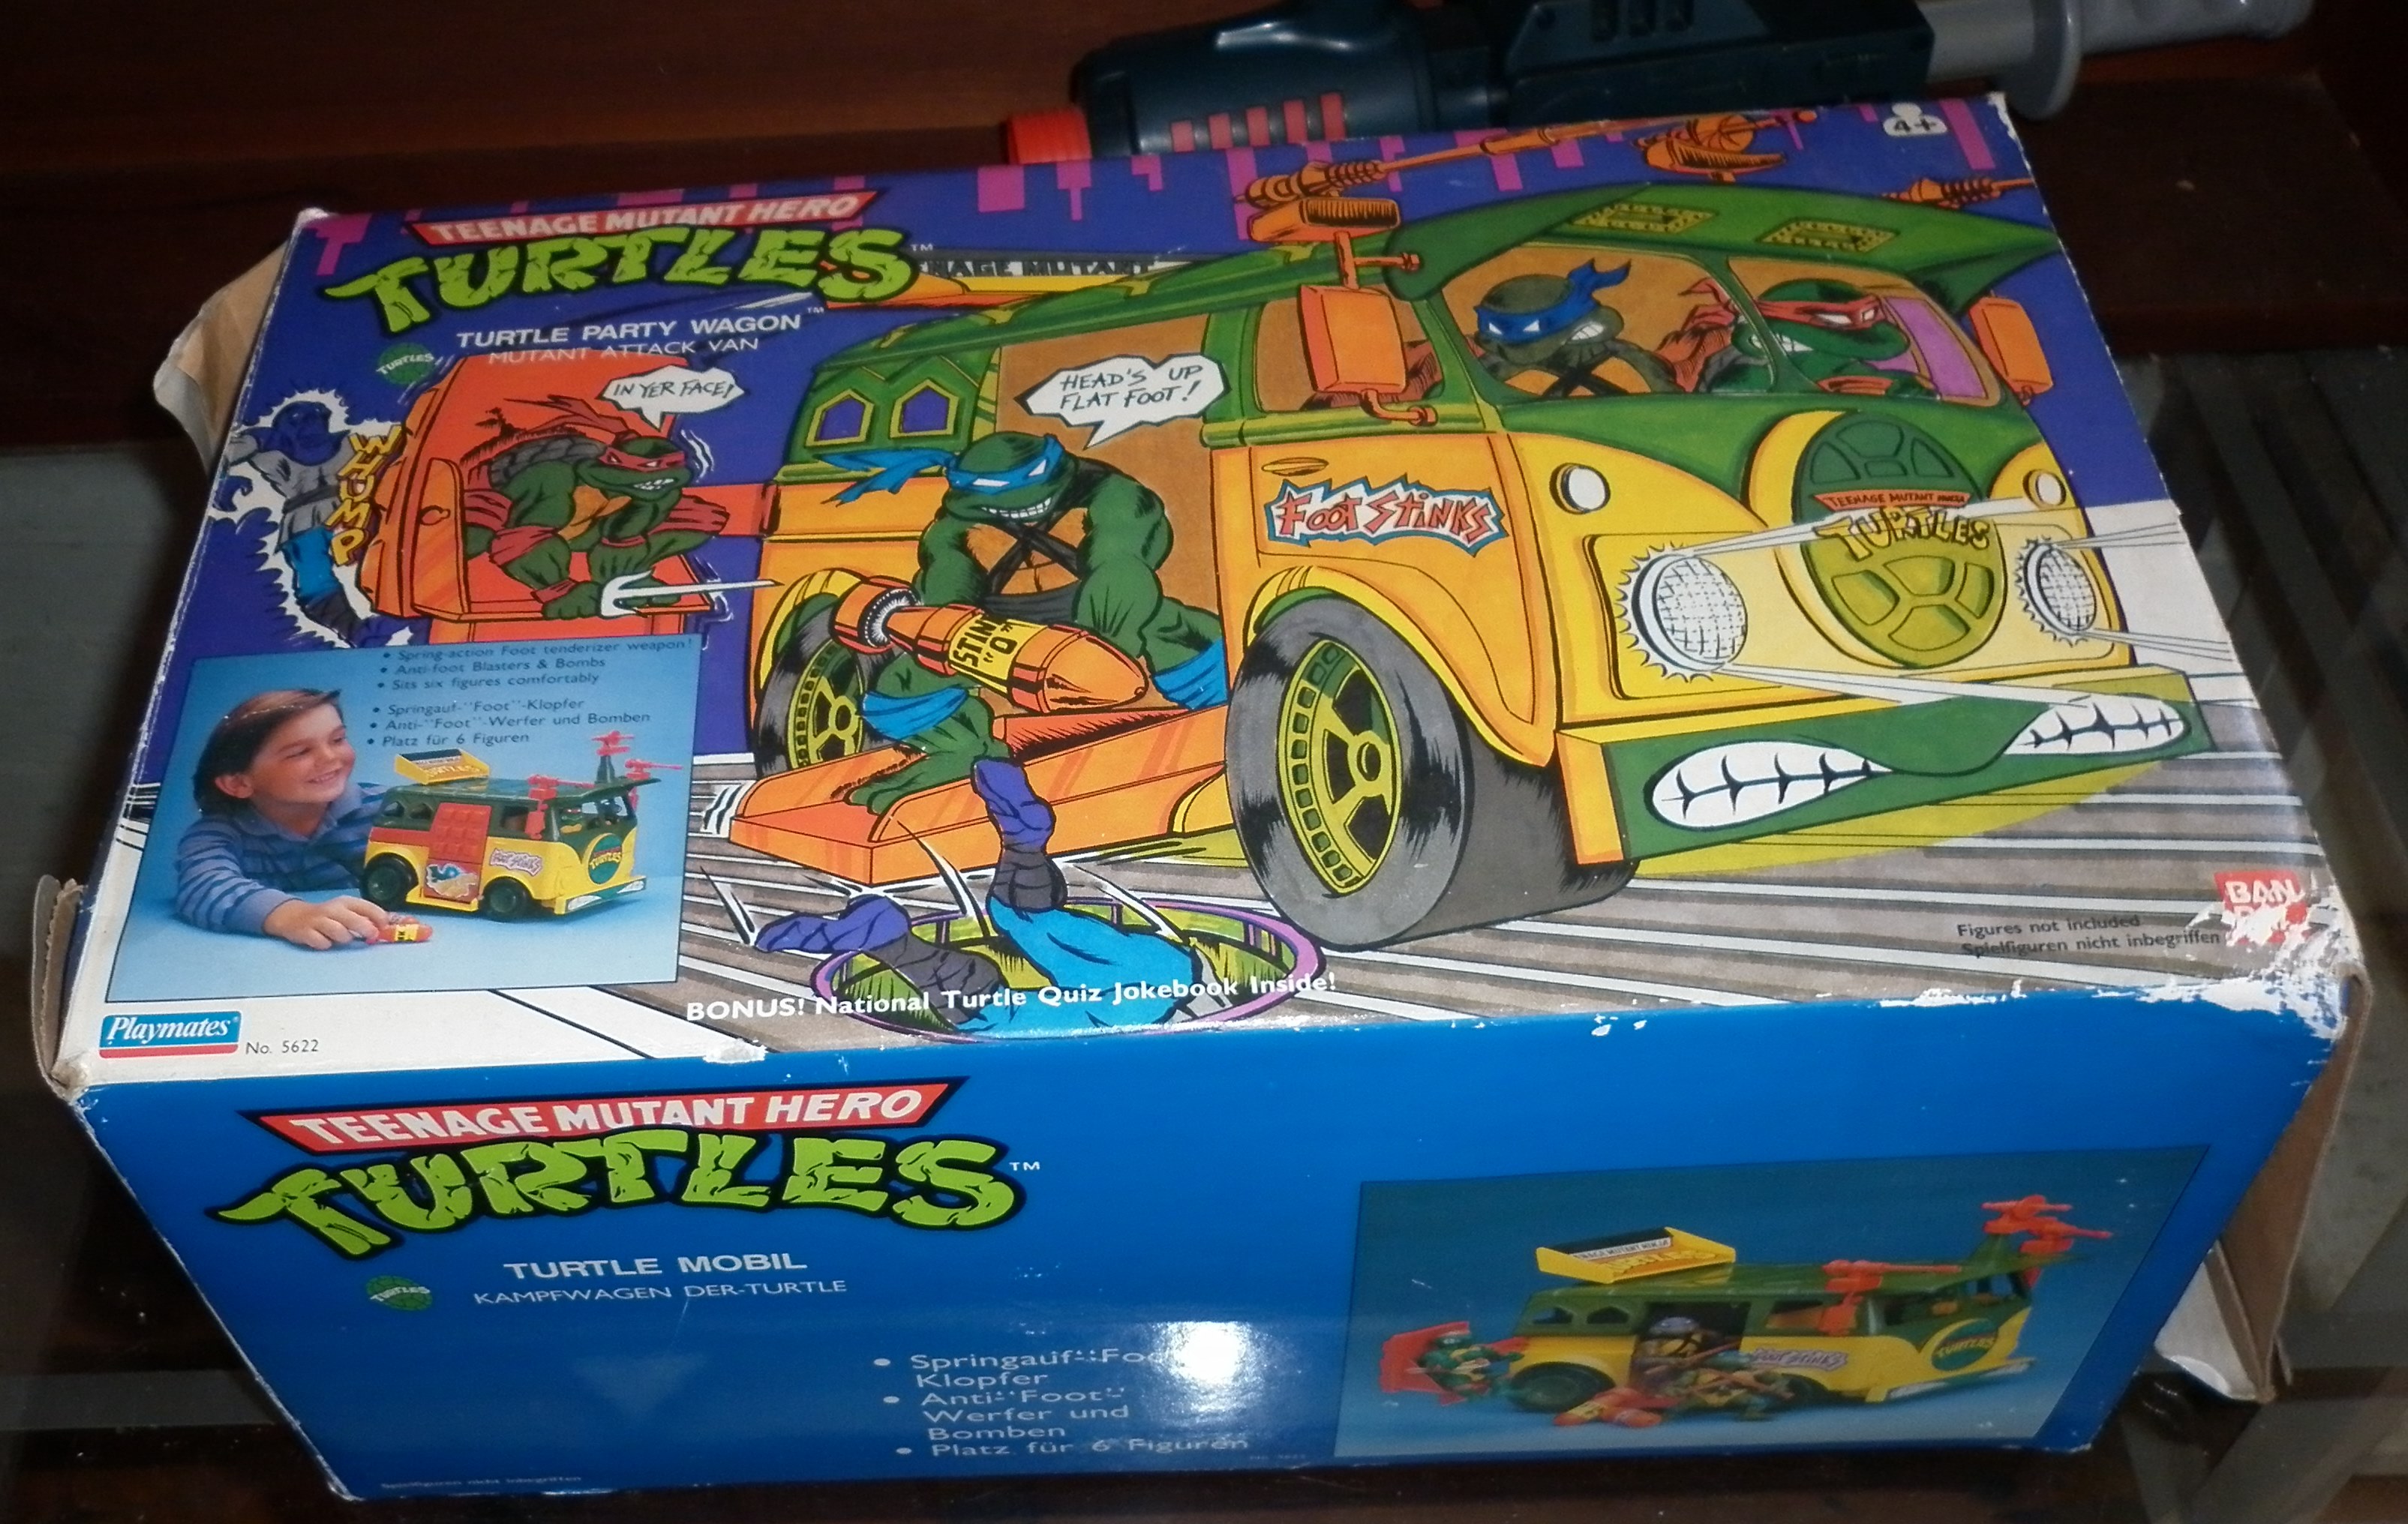 1980's vintage Teenage Mutant Ninja Turtles figures (9), a boxed Turtle Party wagon , etc. - Image 3 of 3